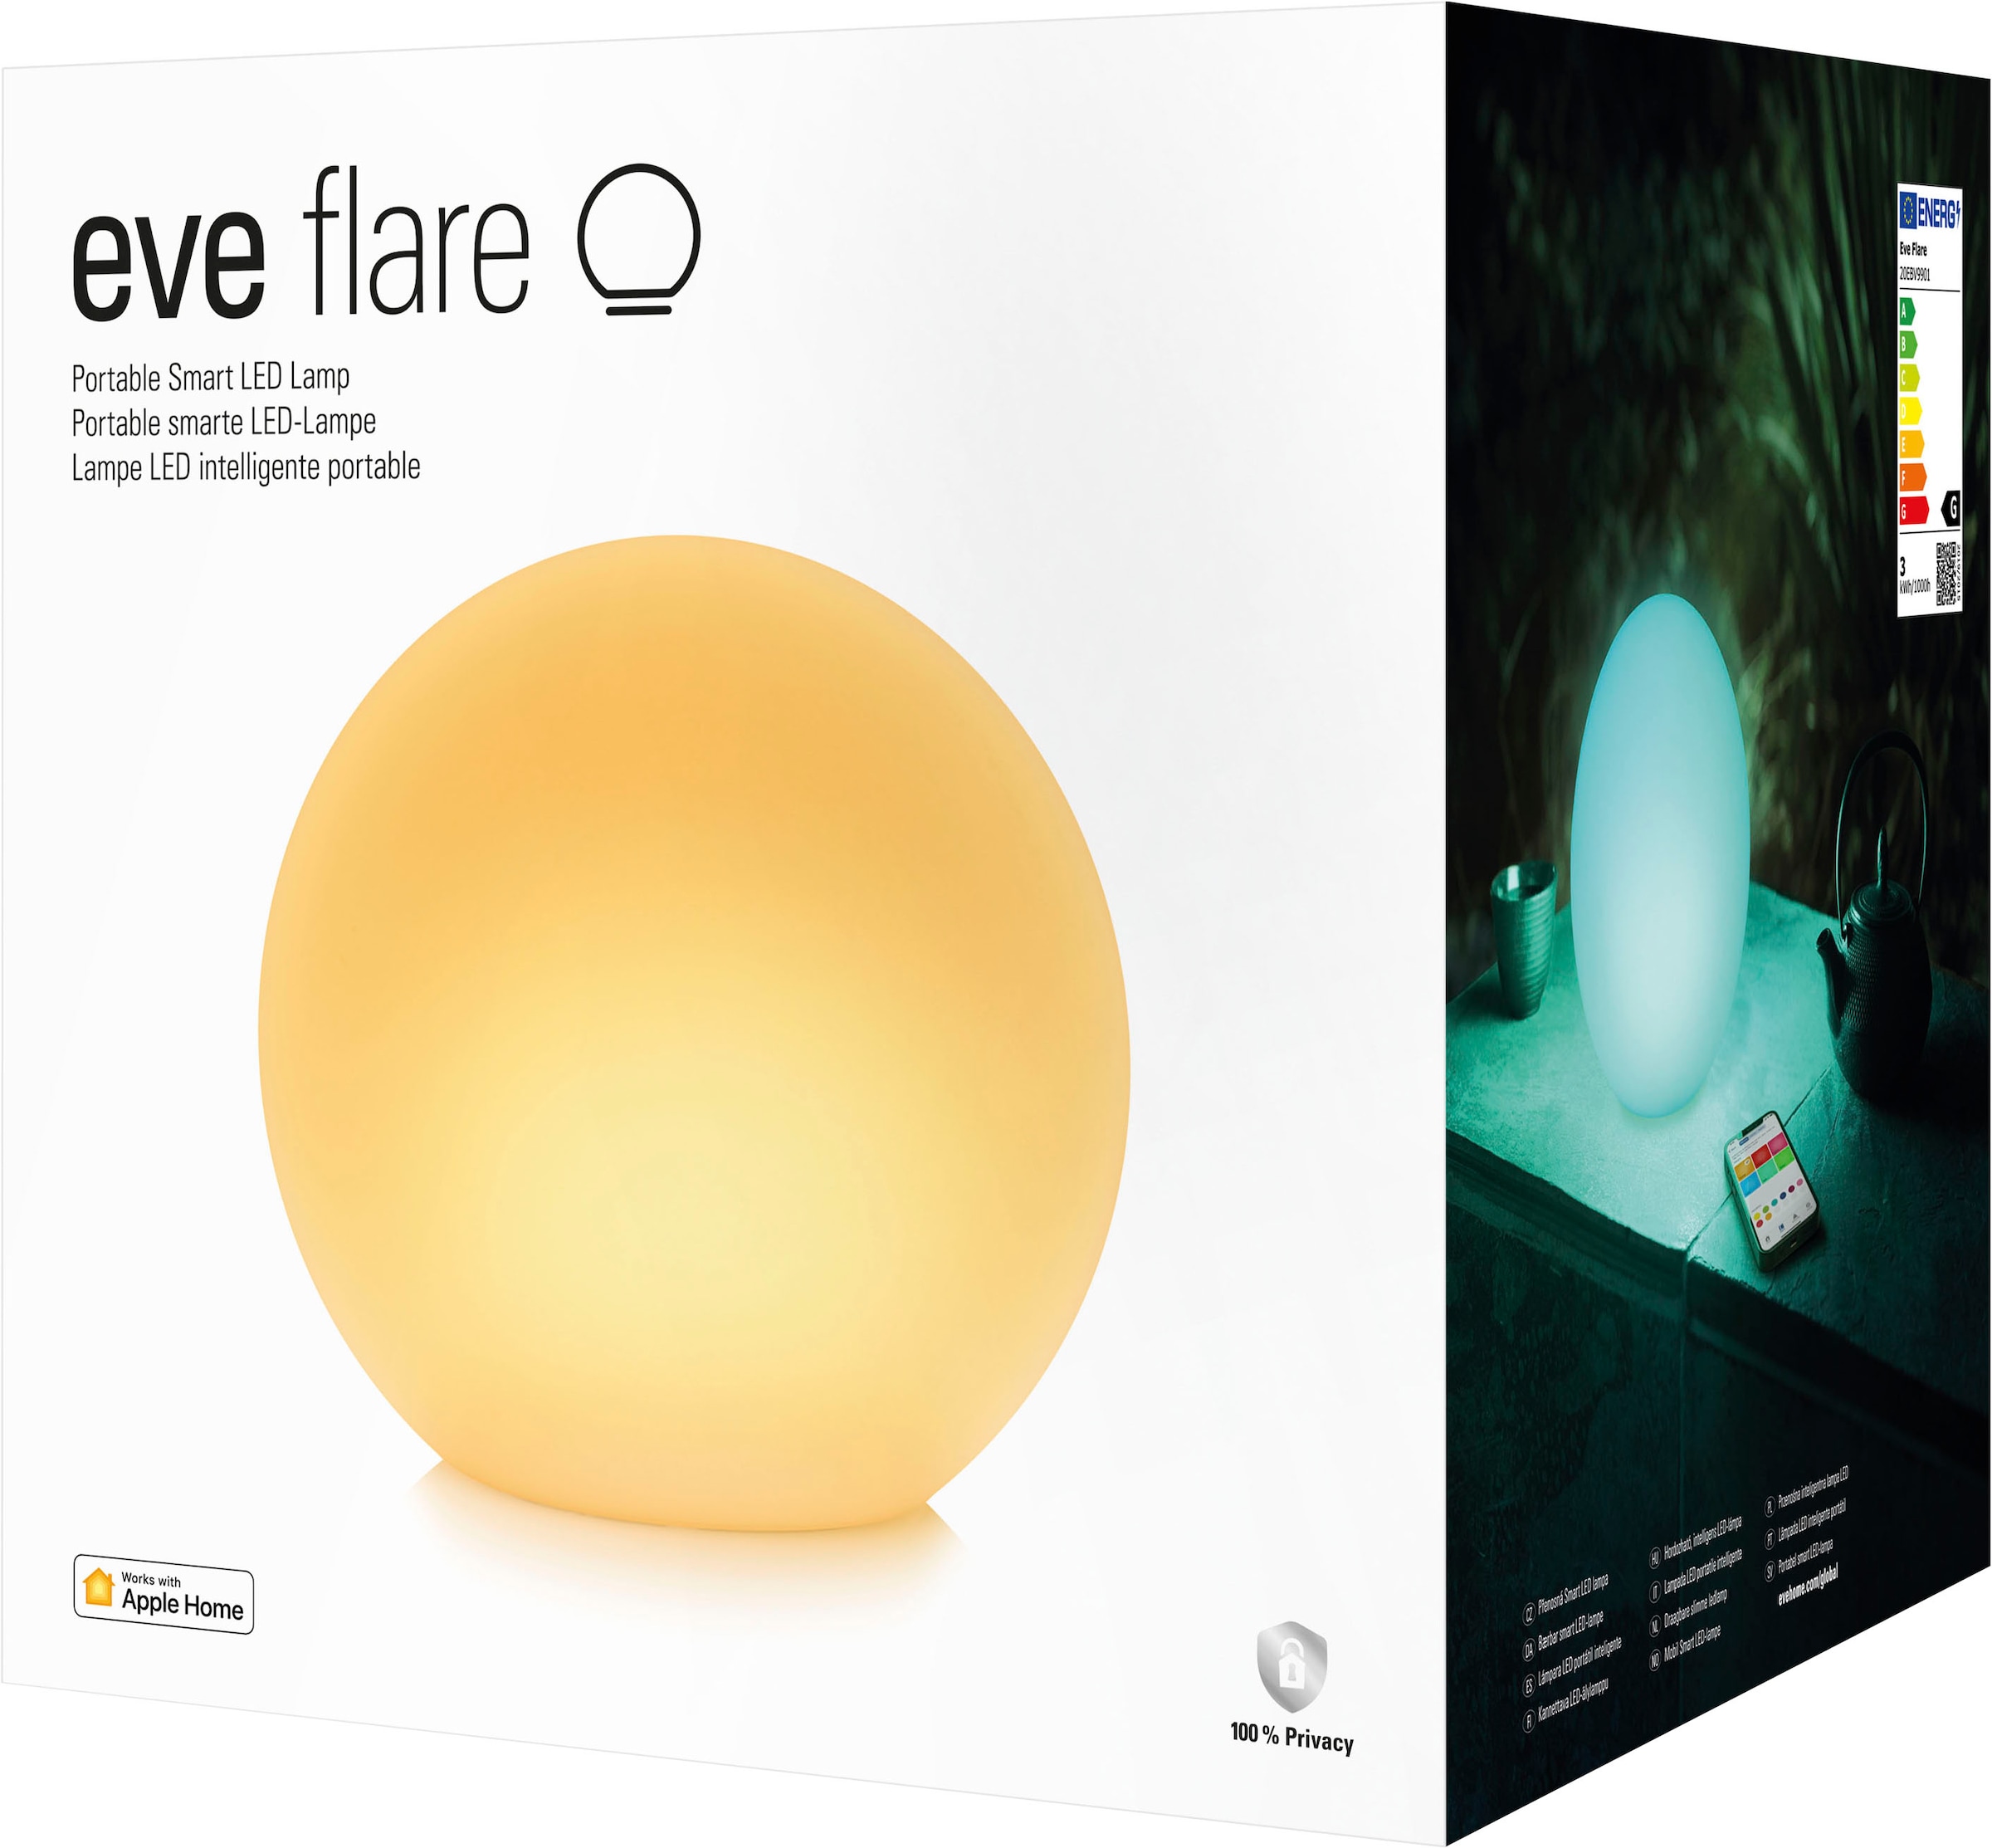 Jahren Garantie kaufen Smarte »Flare LED-Leuchte online | XXL EVE 3 20EBV9901« mit